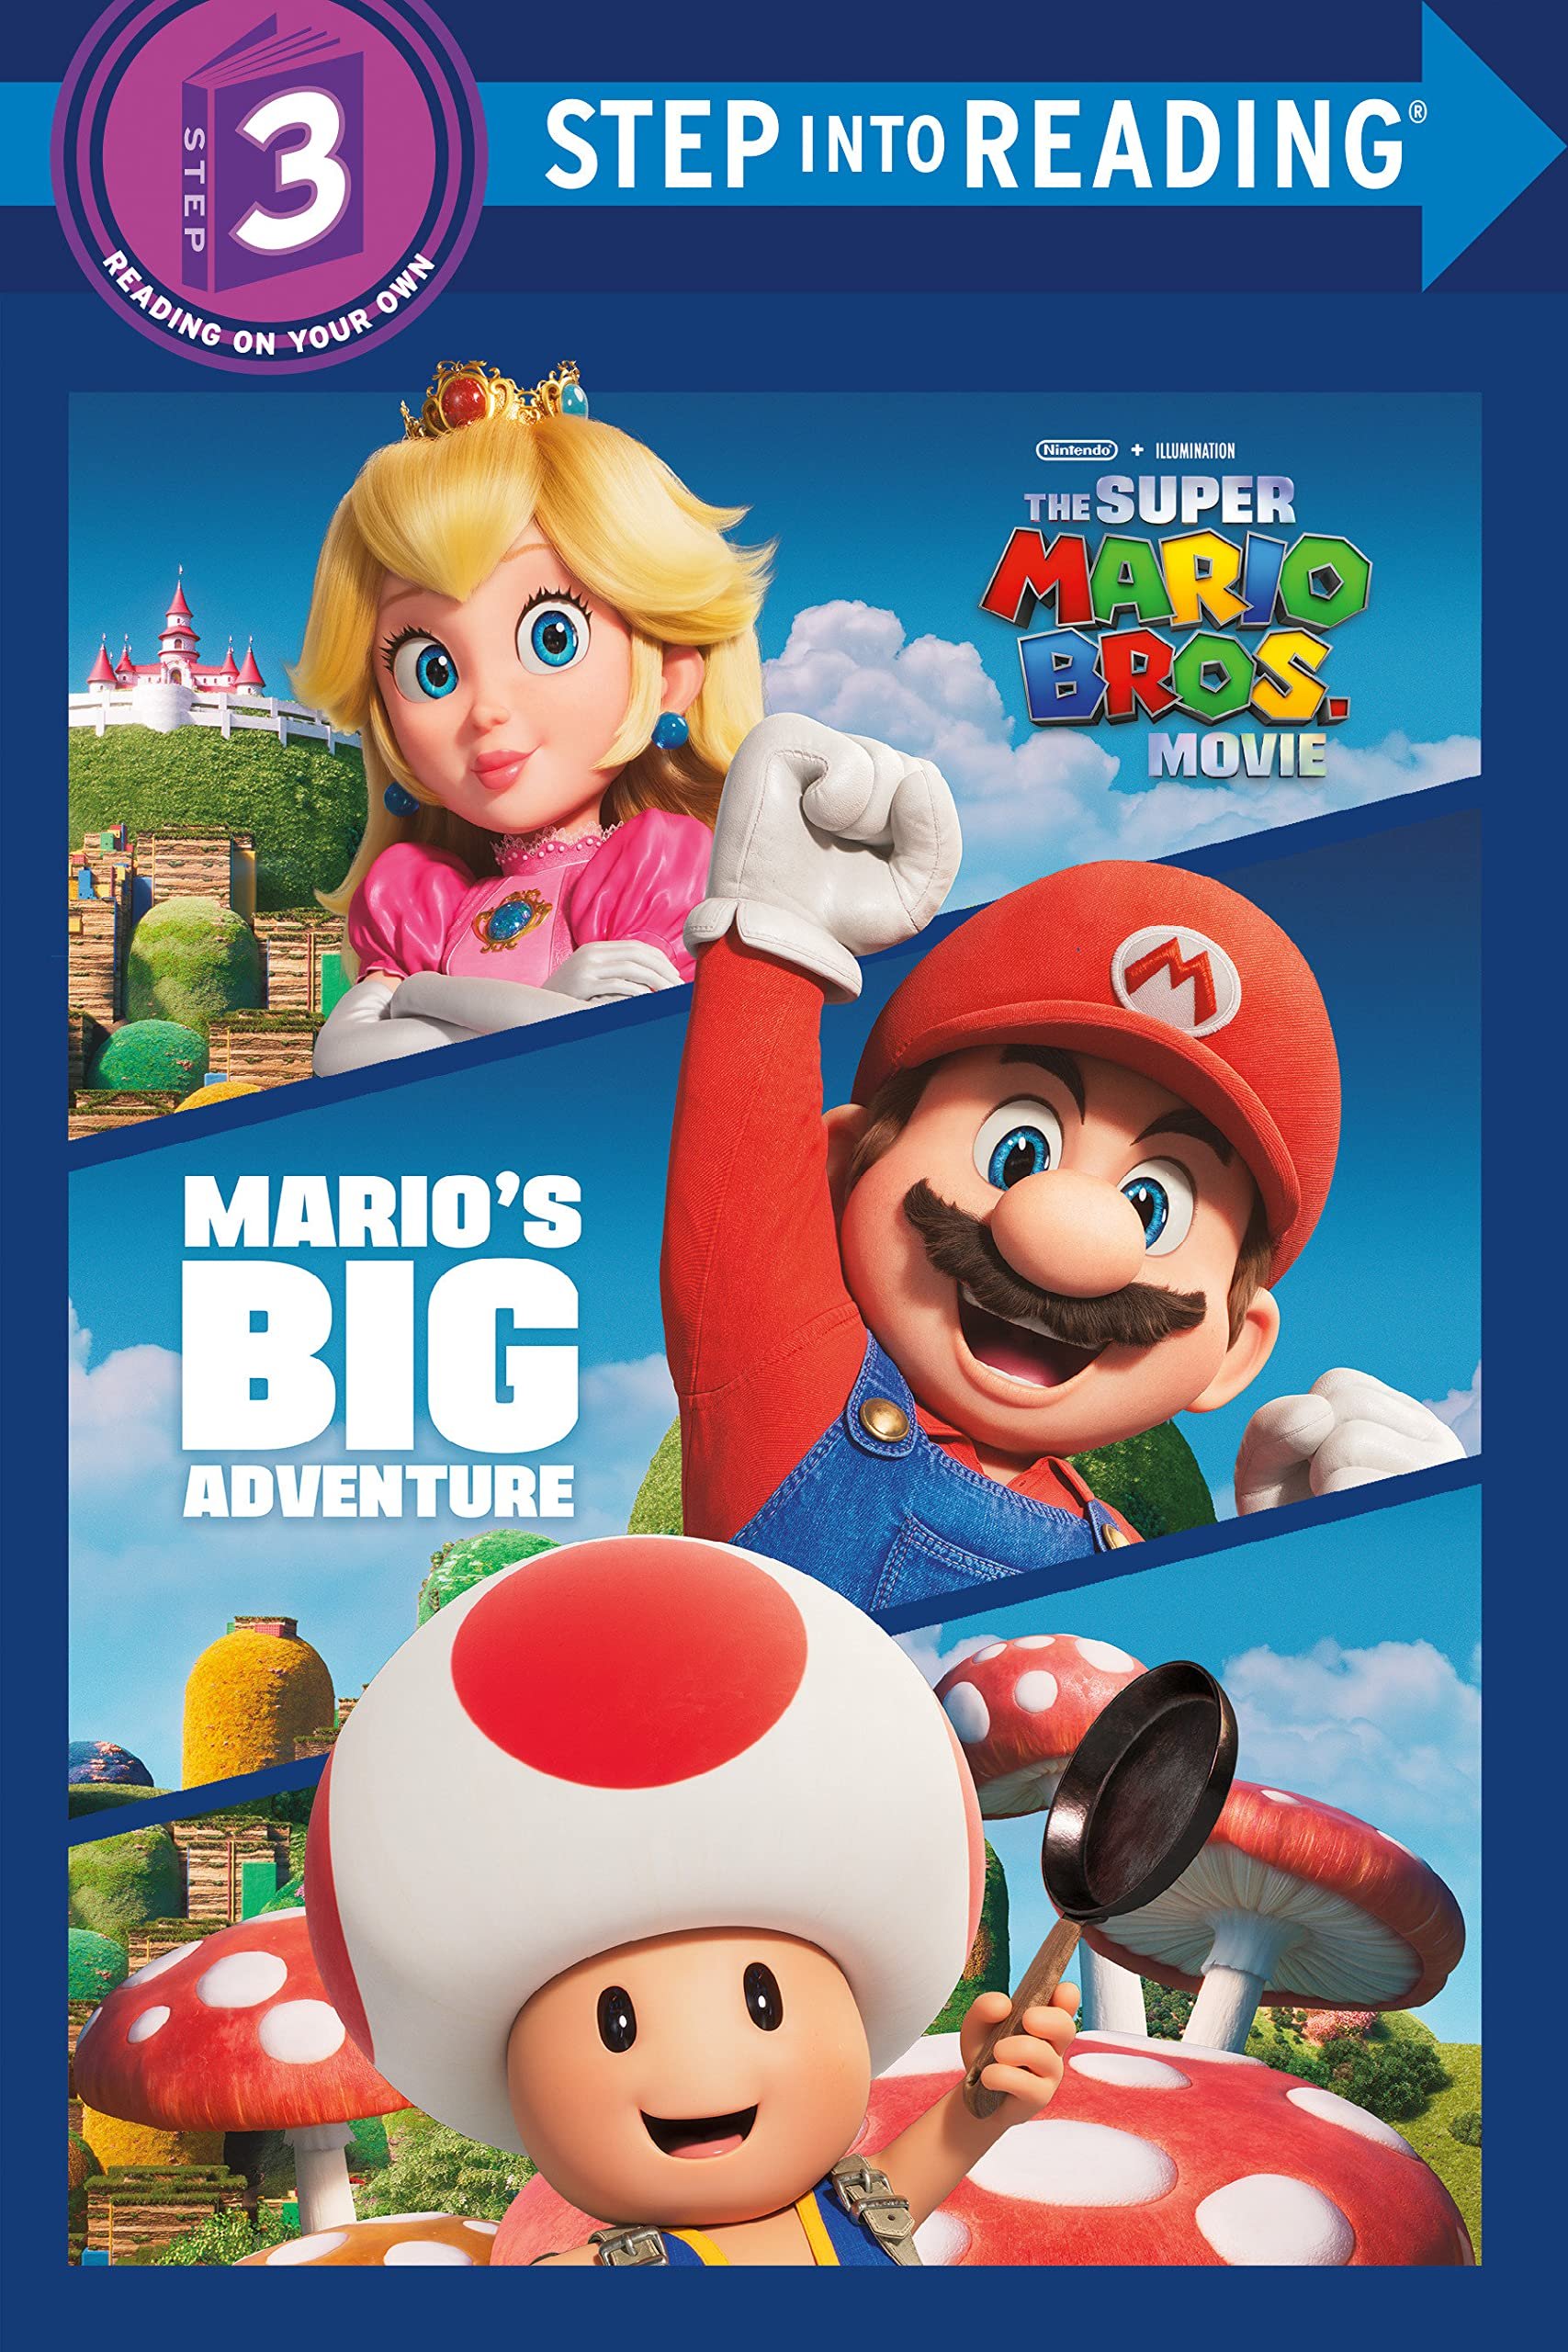 Super Mario Bros, La Película: ¡Se han revelado 4 libros de la cinta! 5